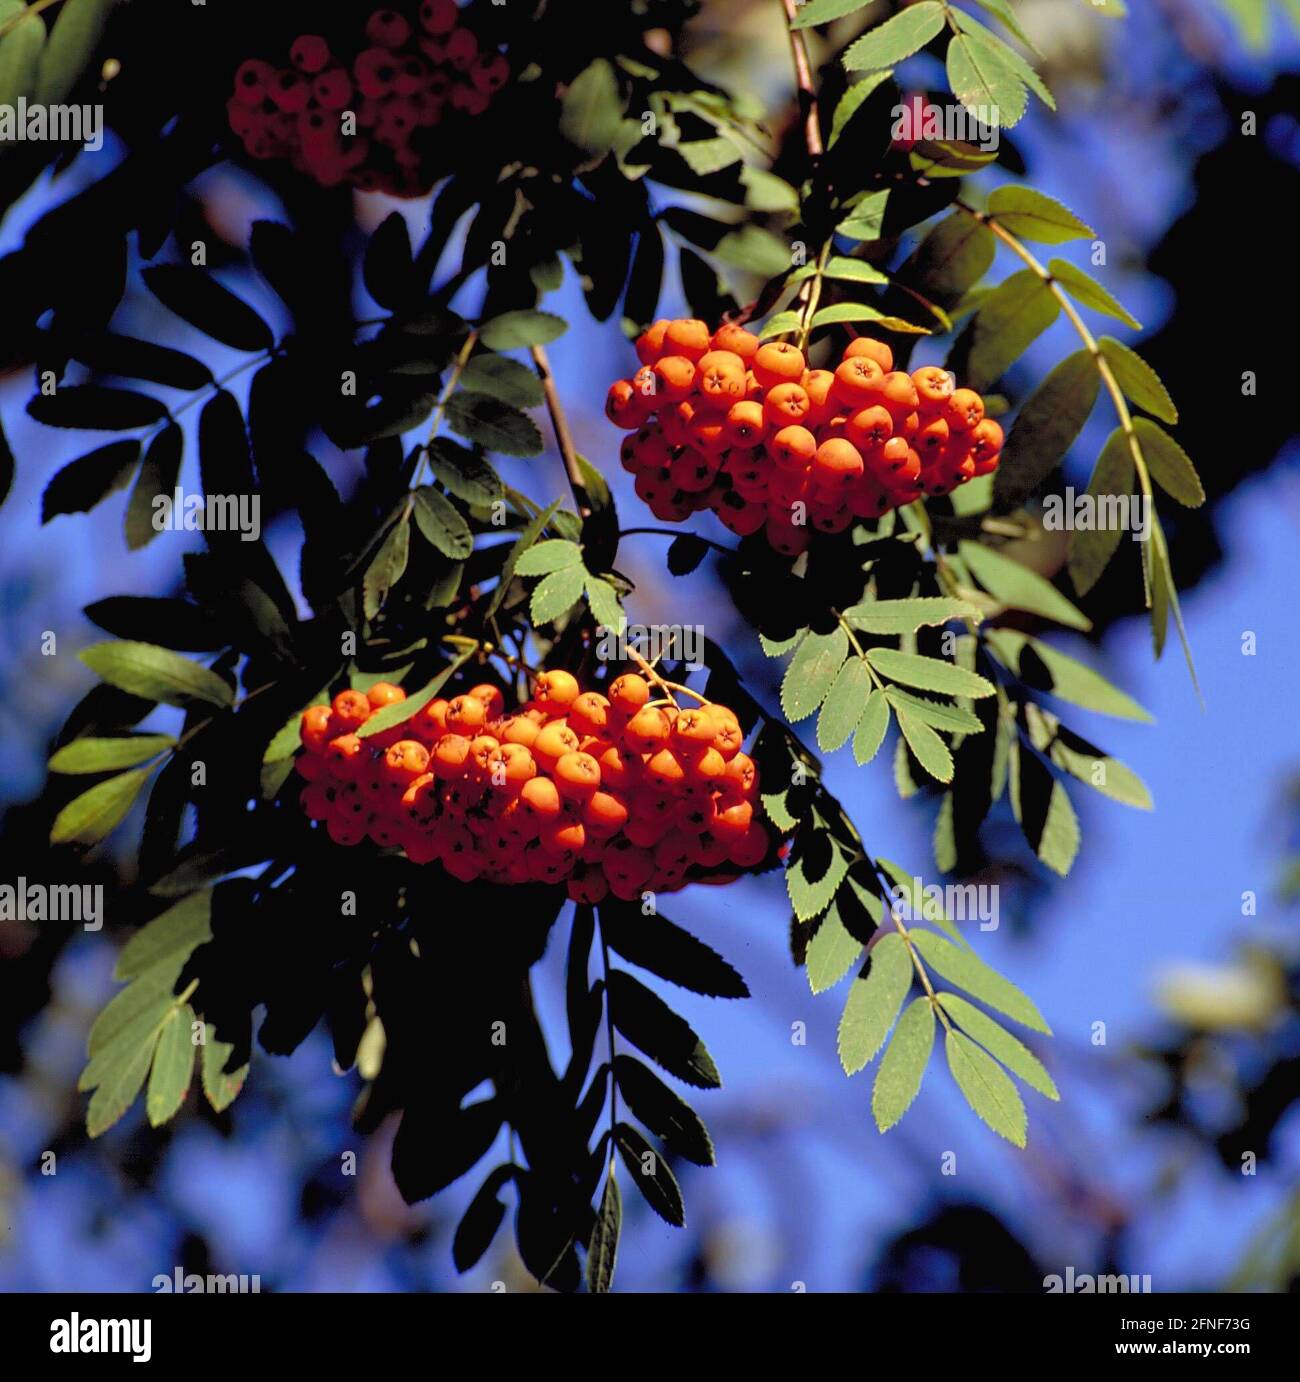 Le rowan (Sorbus aucuparia L), est devenu arbre de l'année 1997. En tant qu'espèce d'arbre très robuste, elle colonise presque tous les types de forêt et de sol. La photo montre les fruits rouges. [traduction automatique] Banque D'Images